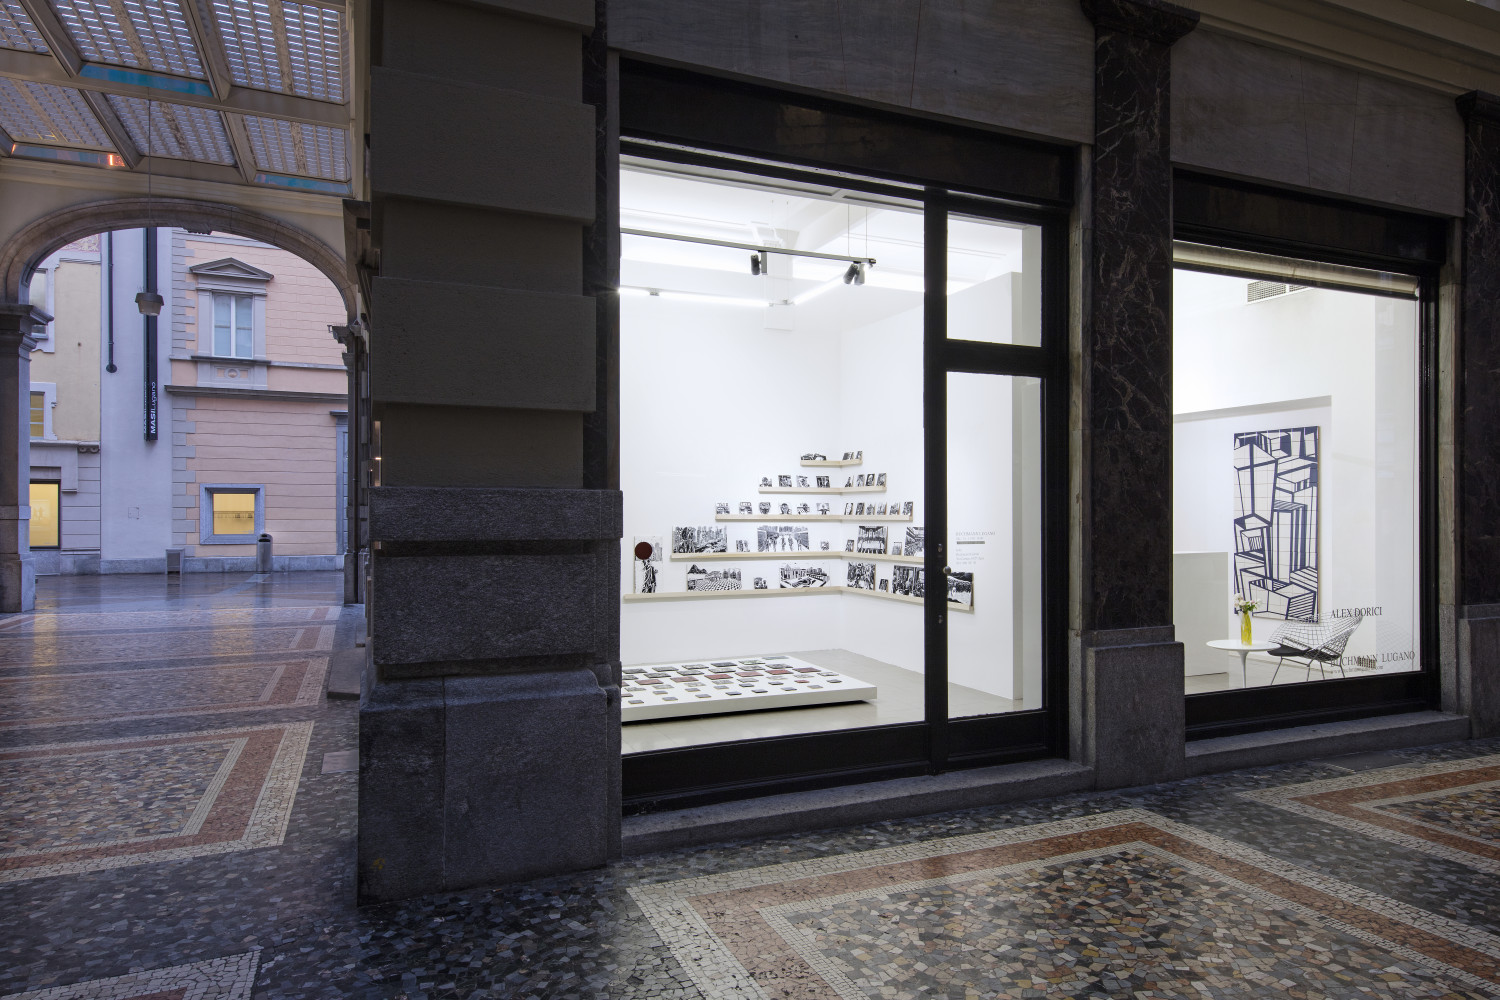 Alex Dorici, ‘ "Diario di Viaggio", 2020’, Installation view, Buchmann Lugano